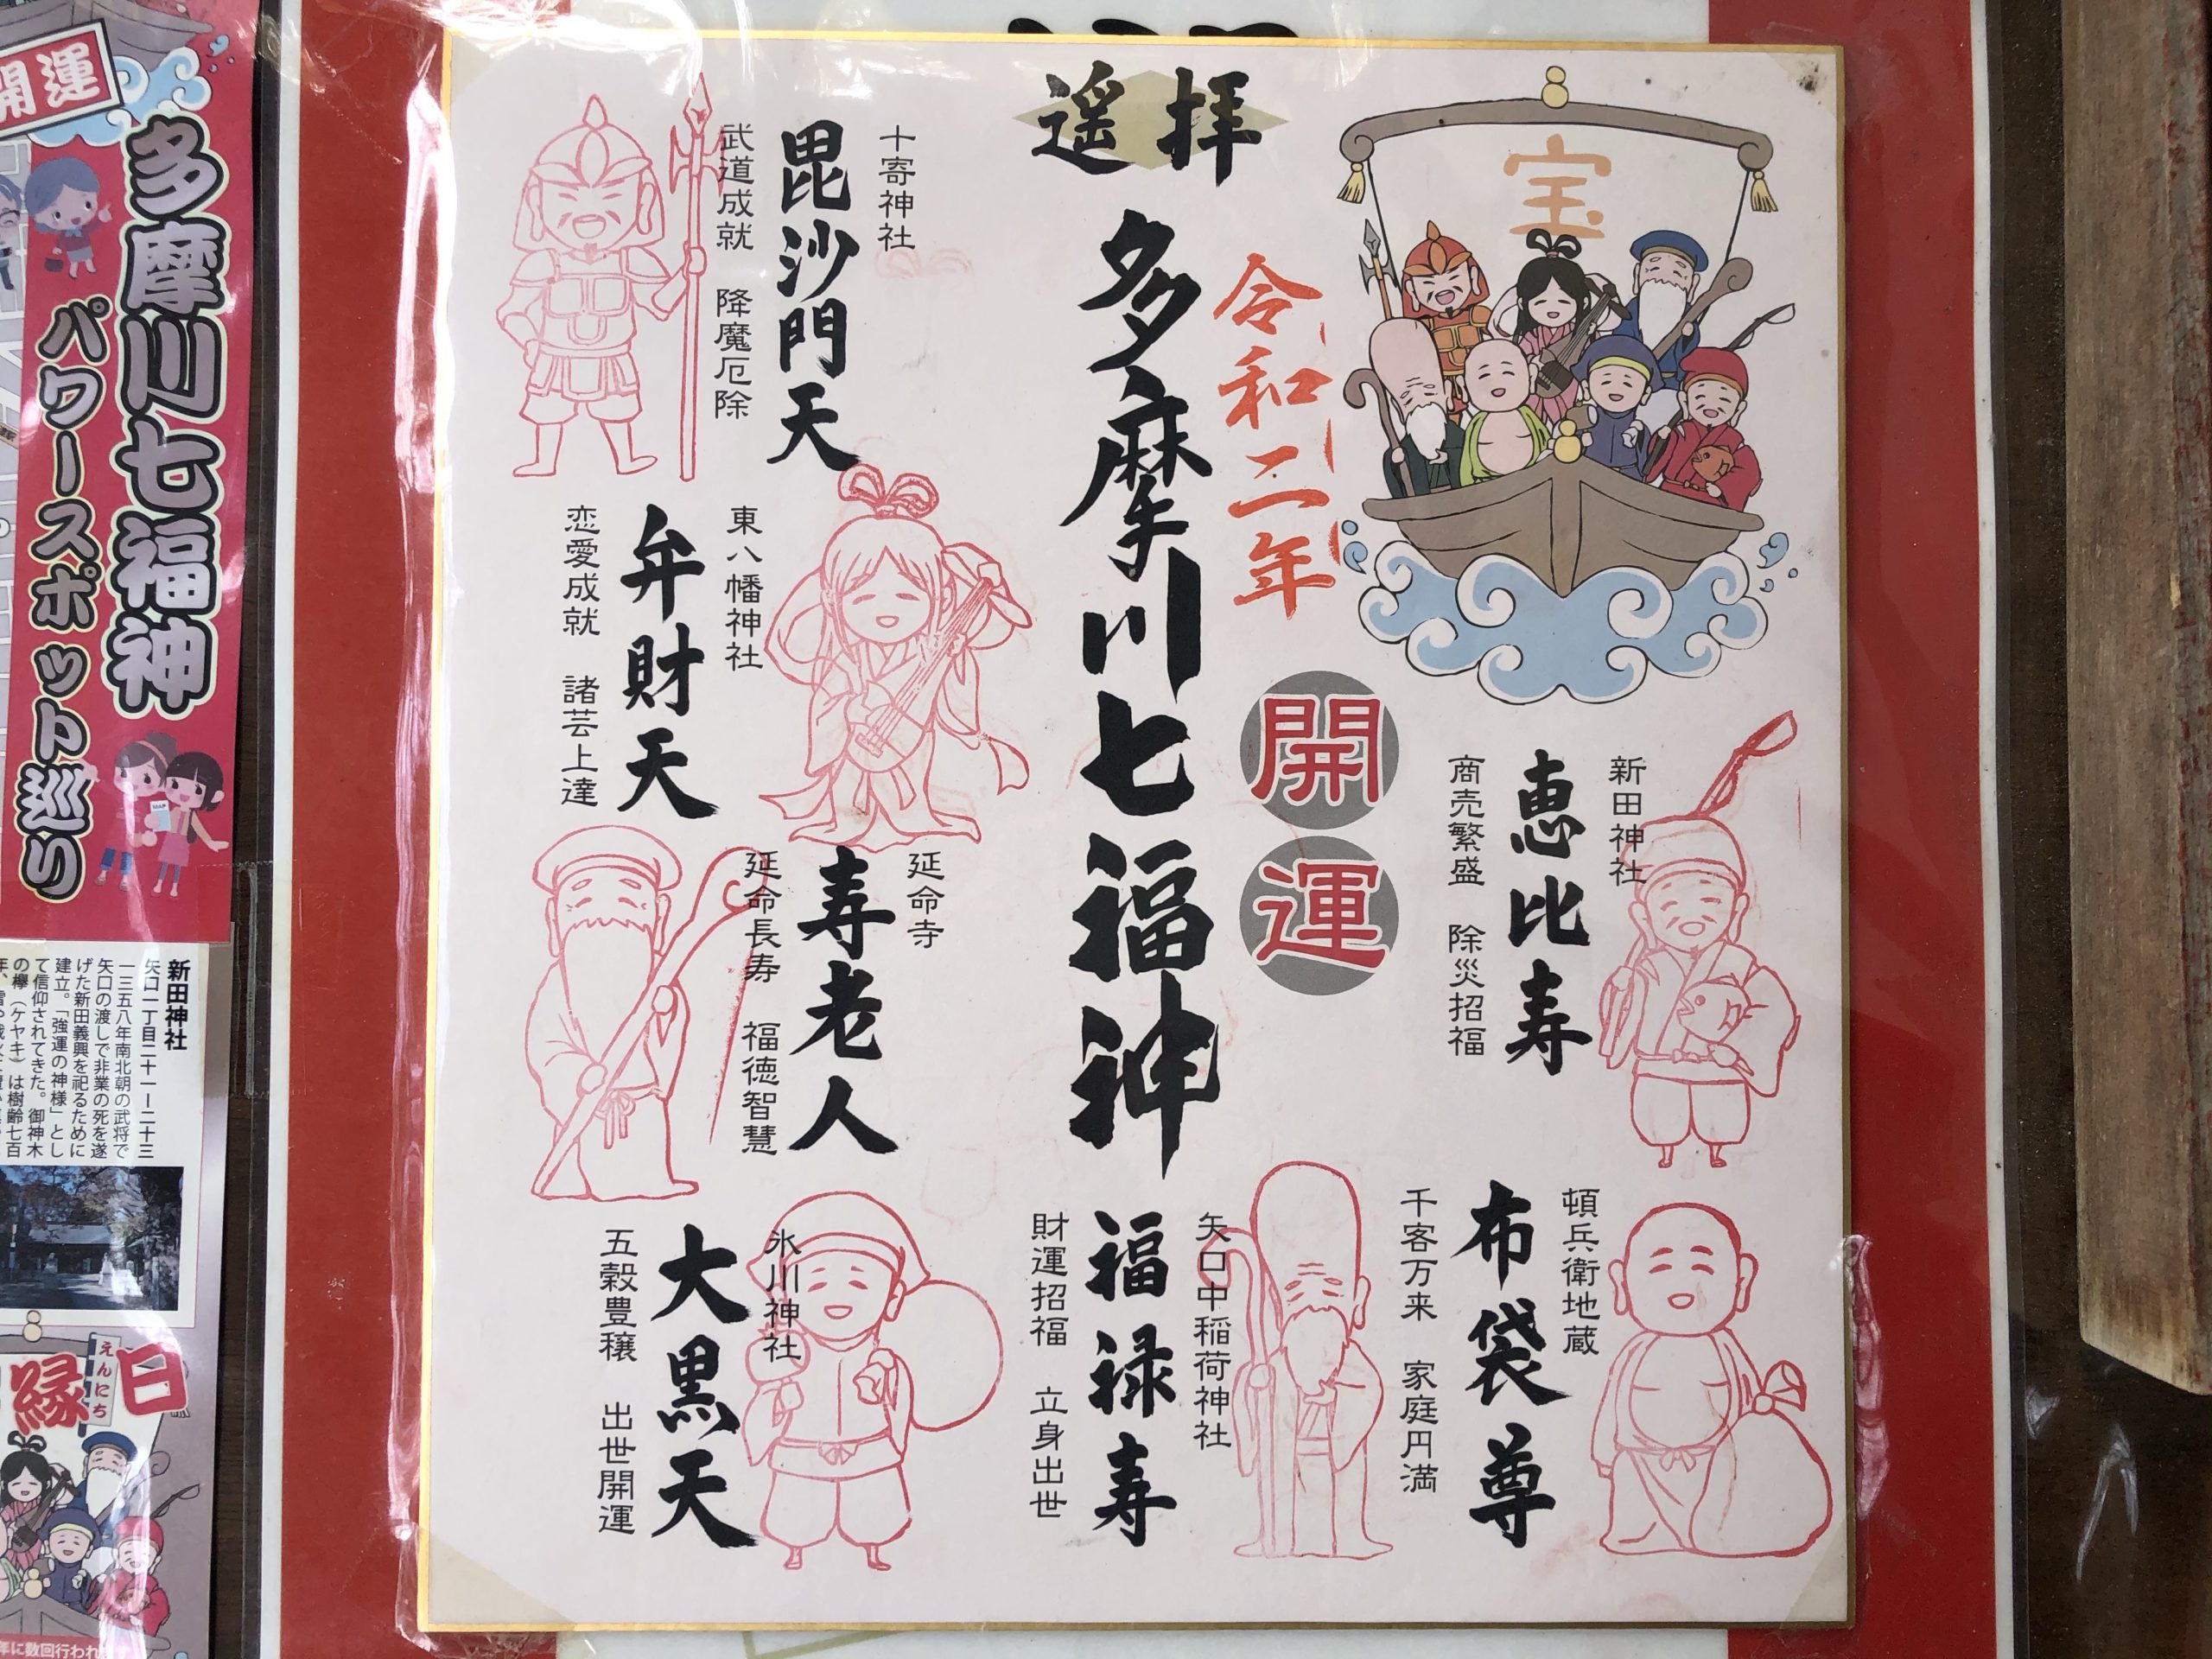 通年開催「多摩川七福神めぐり」 パワースポット巡って健康祈願